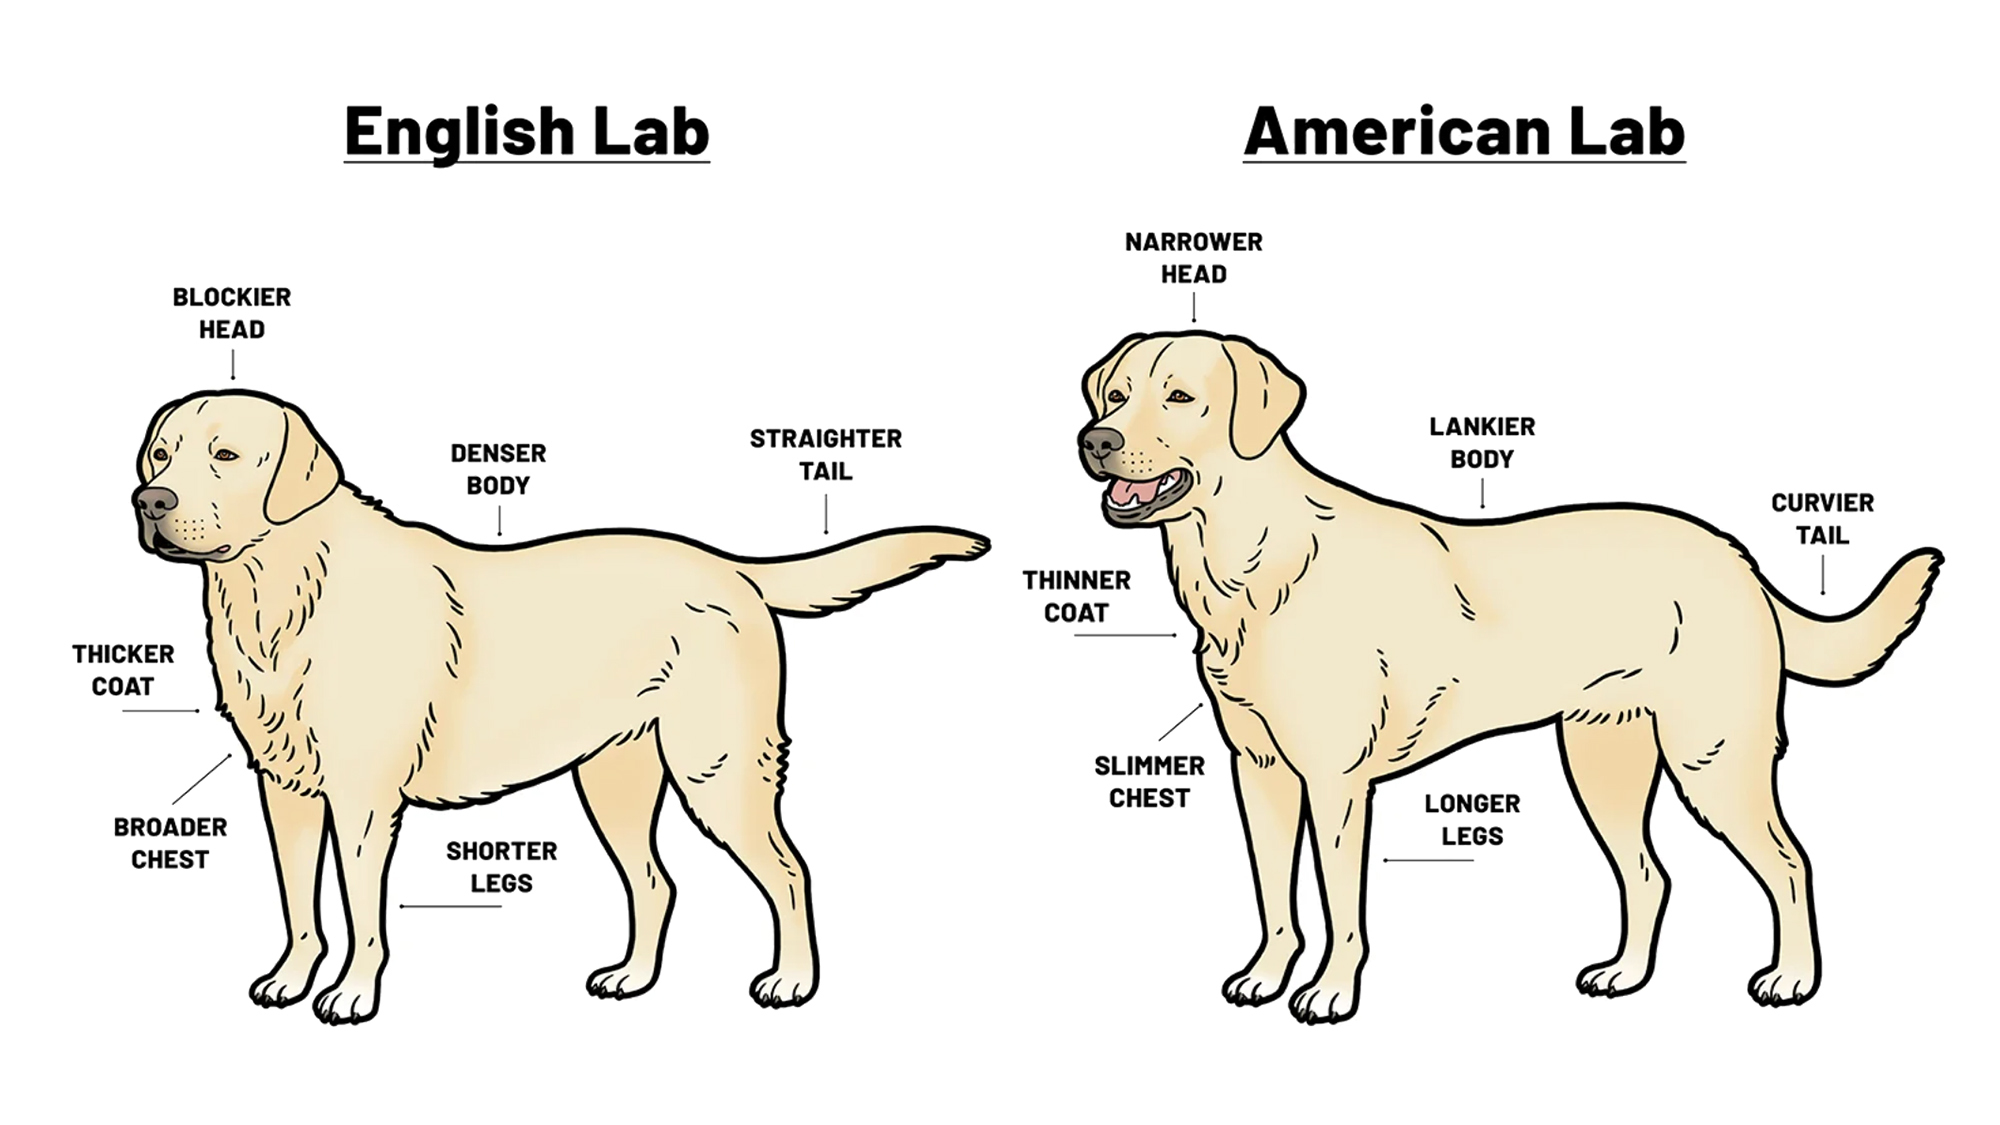 A Size Comparison of Purebred Dogs